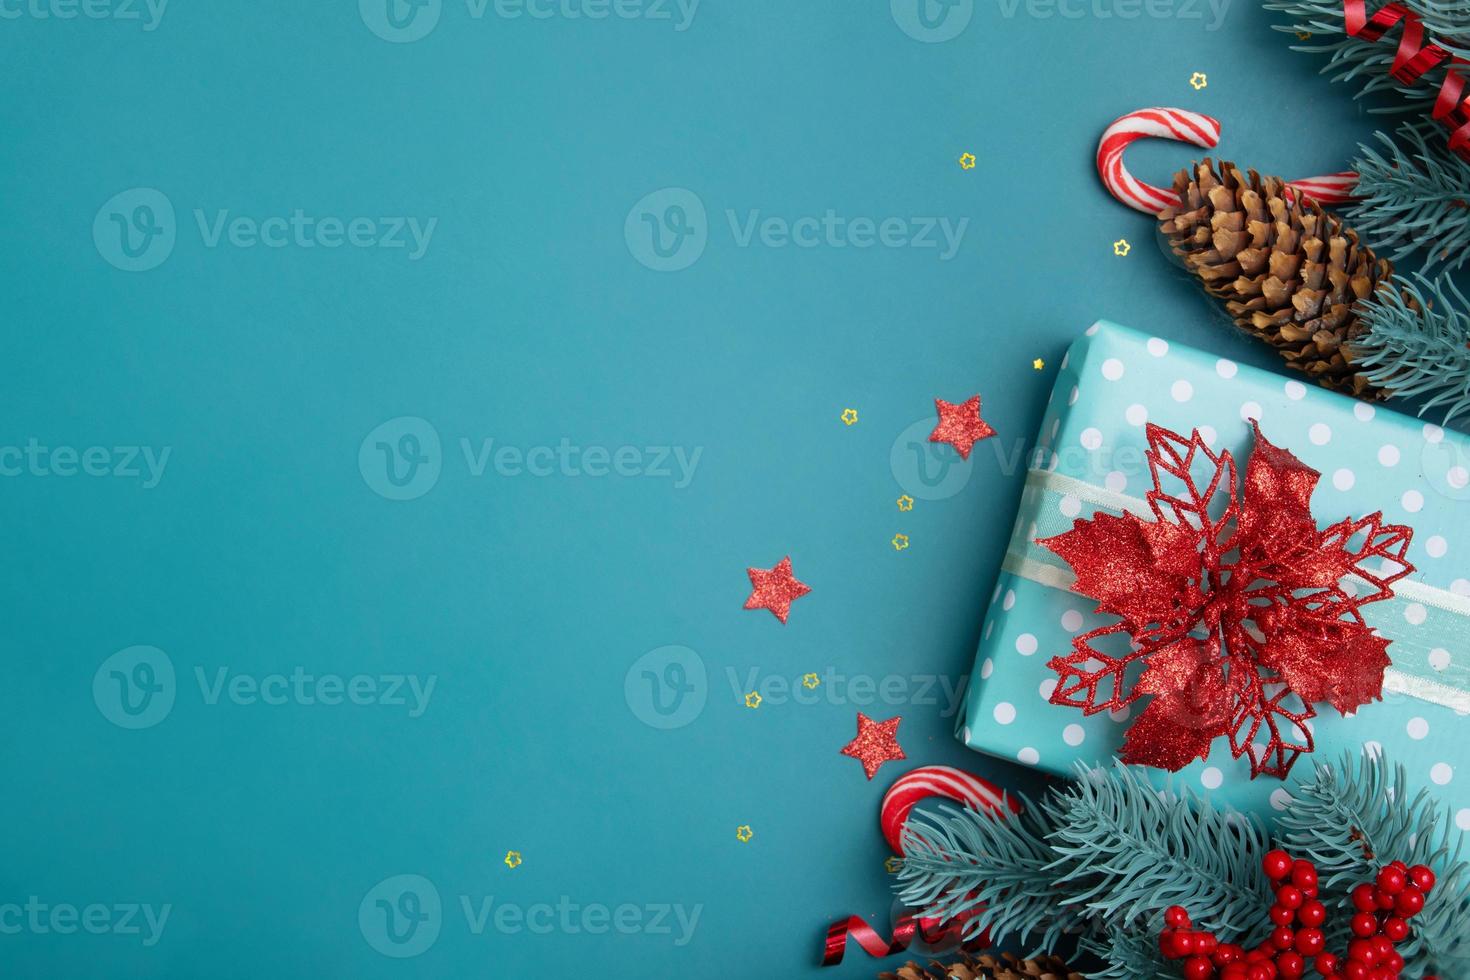 kerst plat lag achtergrond met geschenken, rode bessen en dennenboom op turquoise achtergrond foto